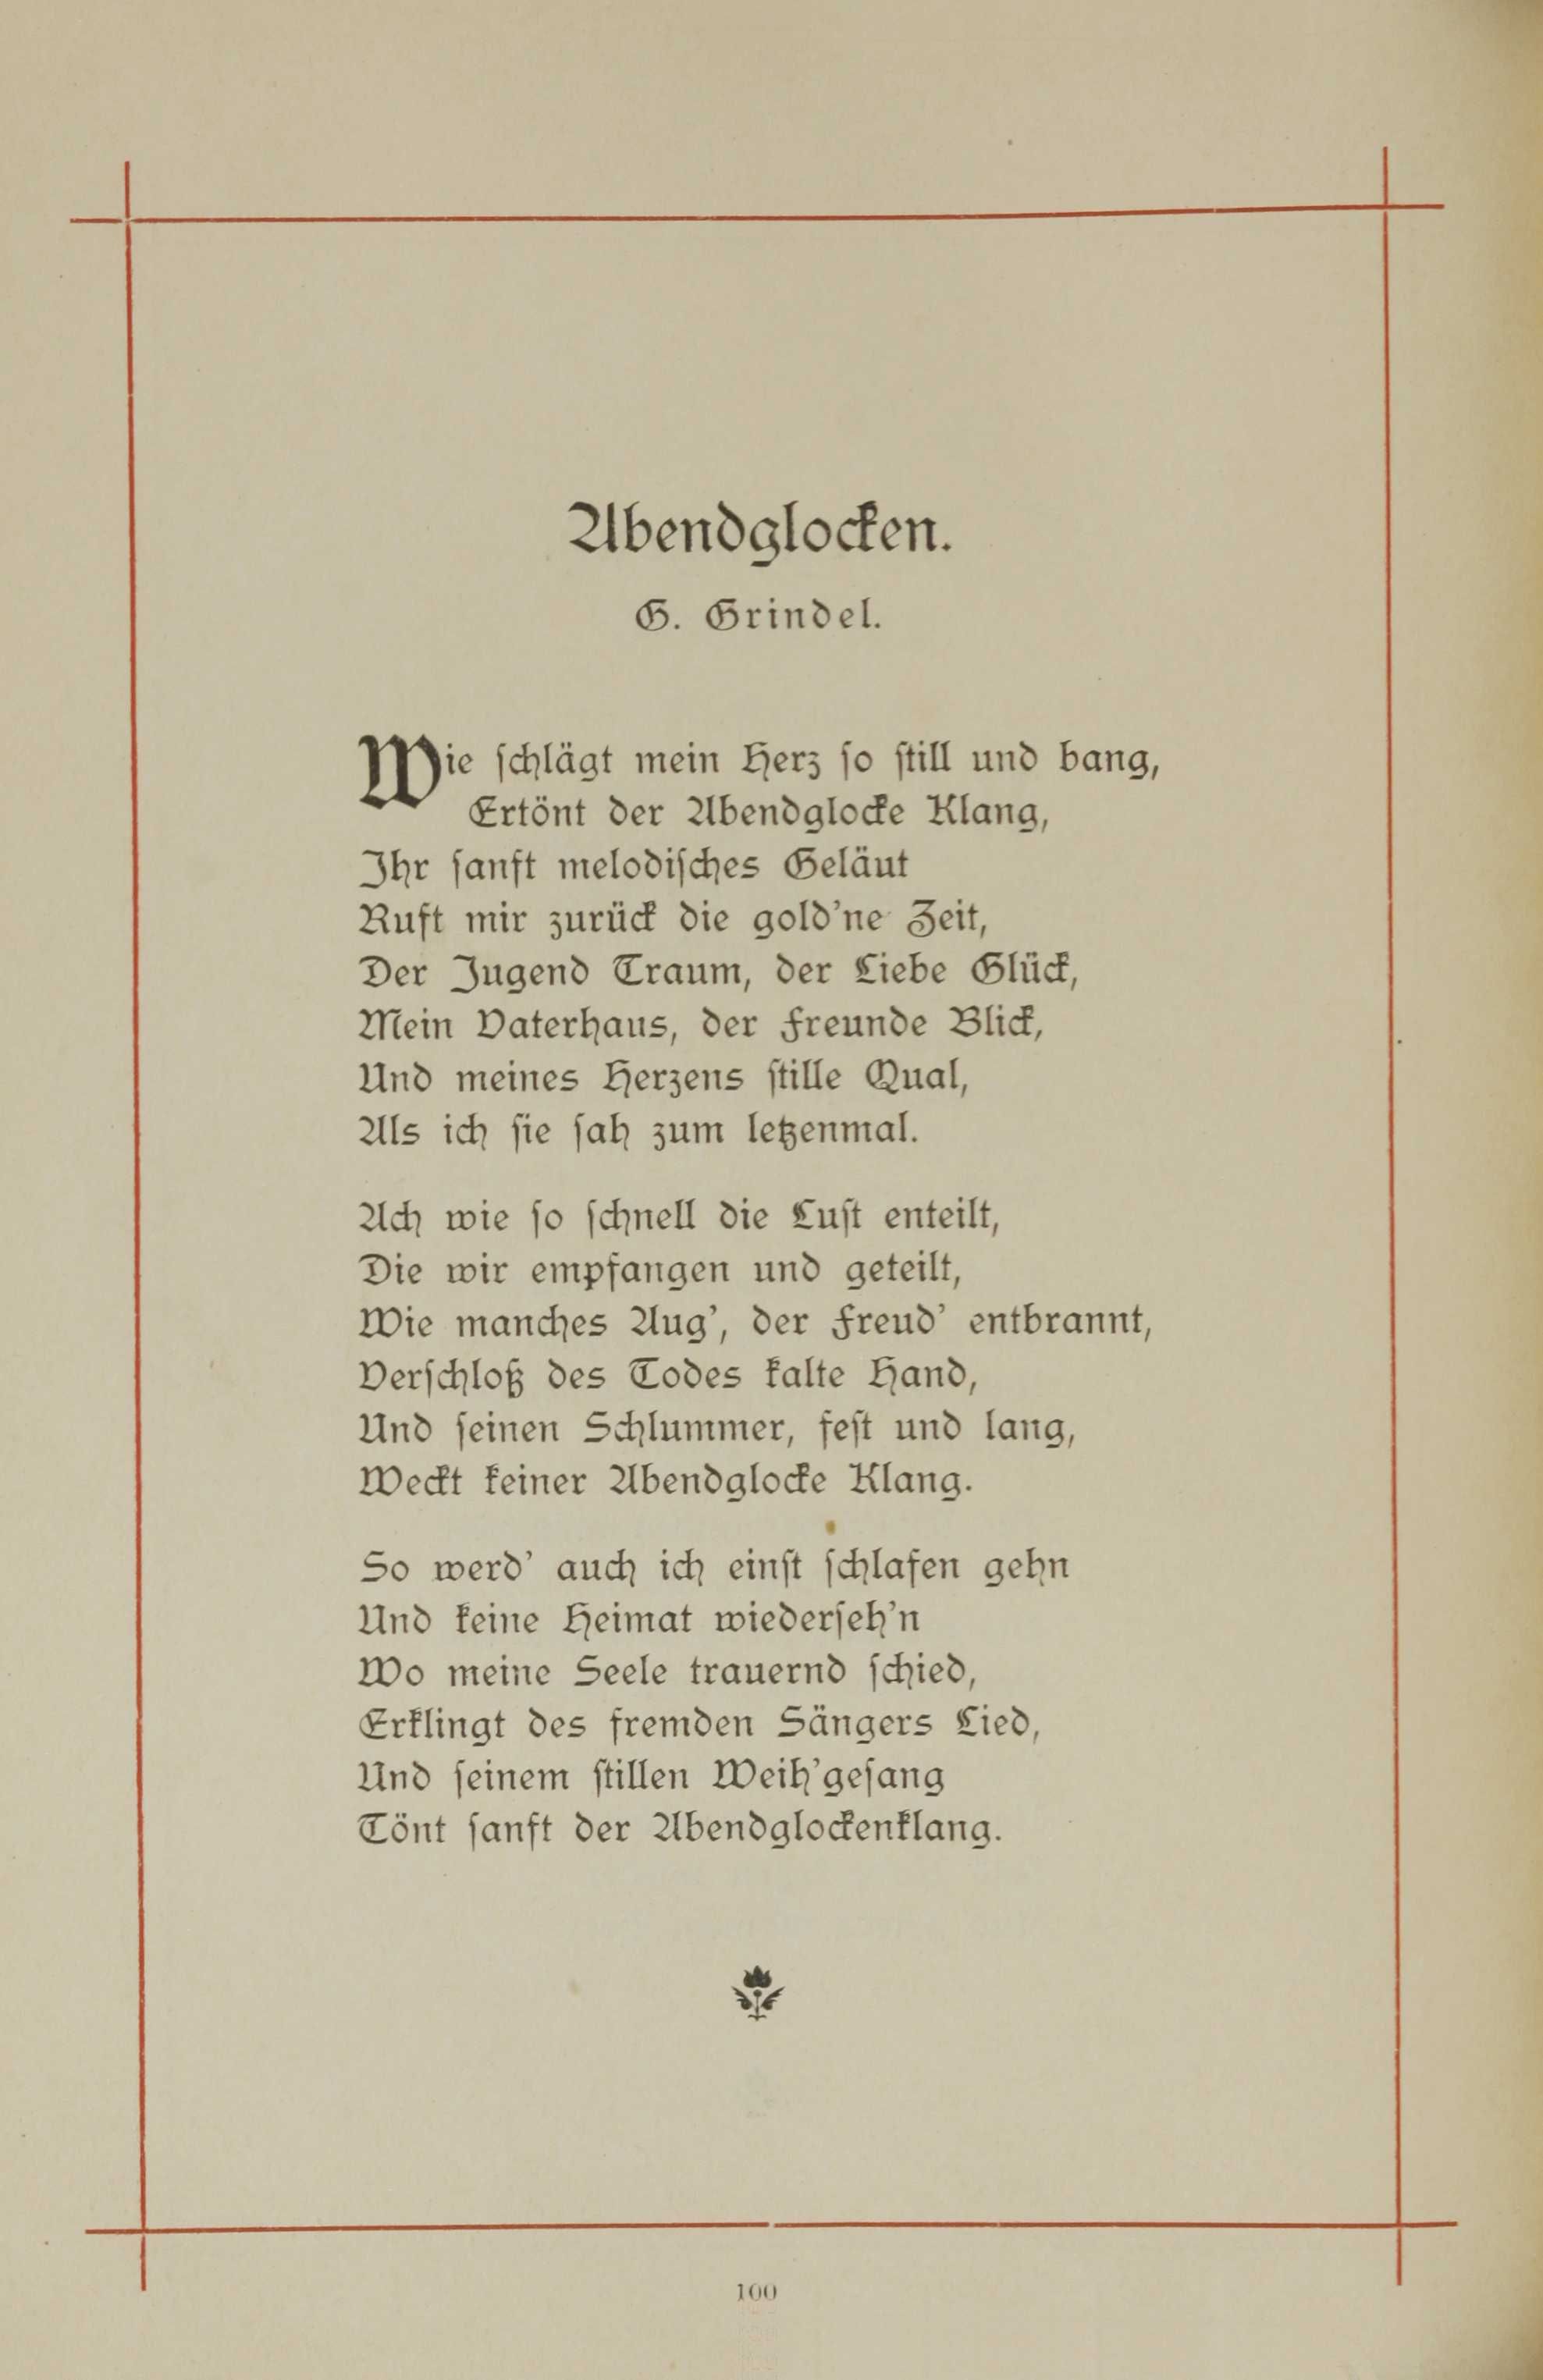 Abendglocken (1893) | 1. (100) Main body of text